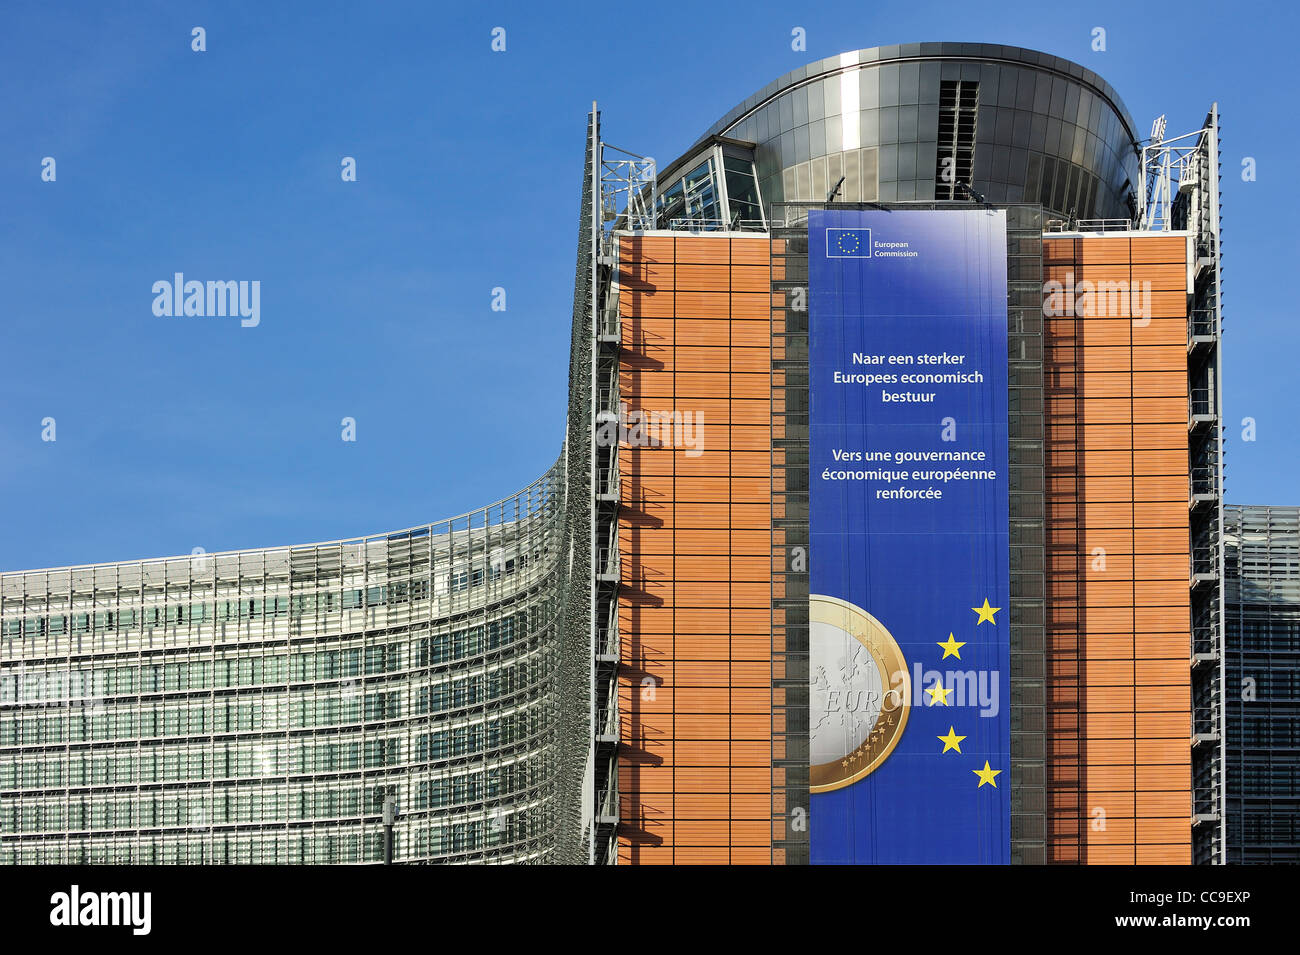 La Commission européenne, organe exécutif de l'Union européenne, basée dans le bâtiment Berlaymont de Bruxelles, Belgique Banque D'Images